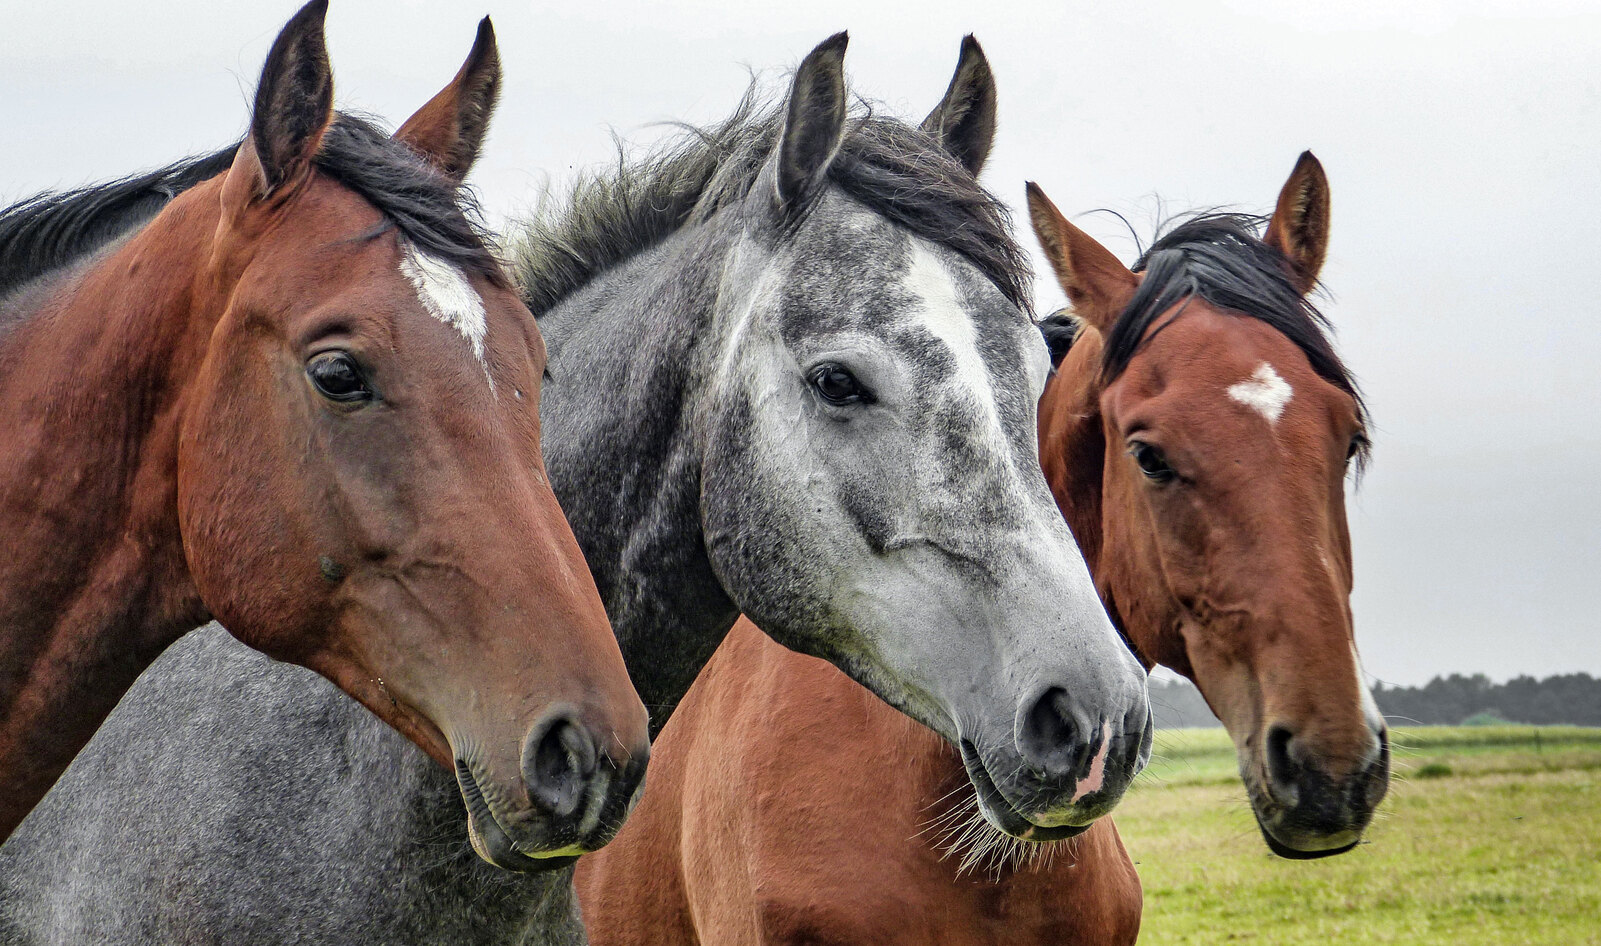 Australian Slaughterhouse Destroys 300 Retired Racehorses for Meat in 22 Days